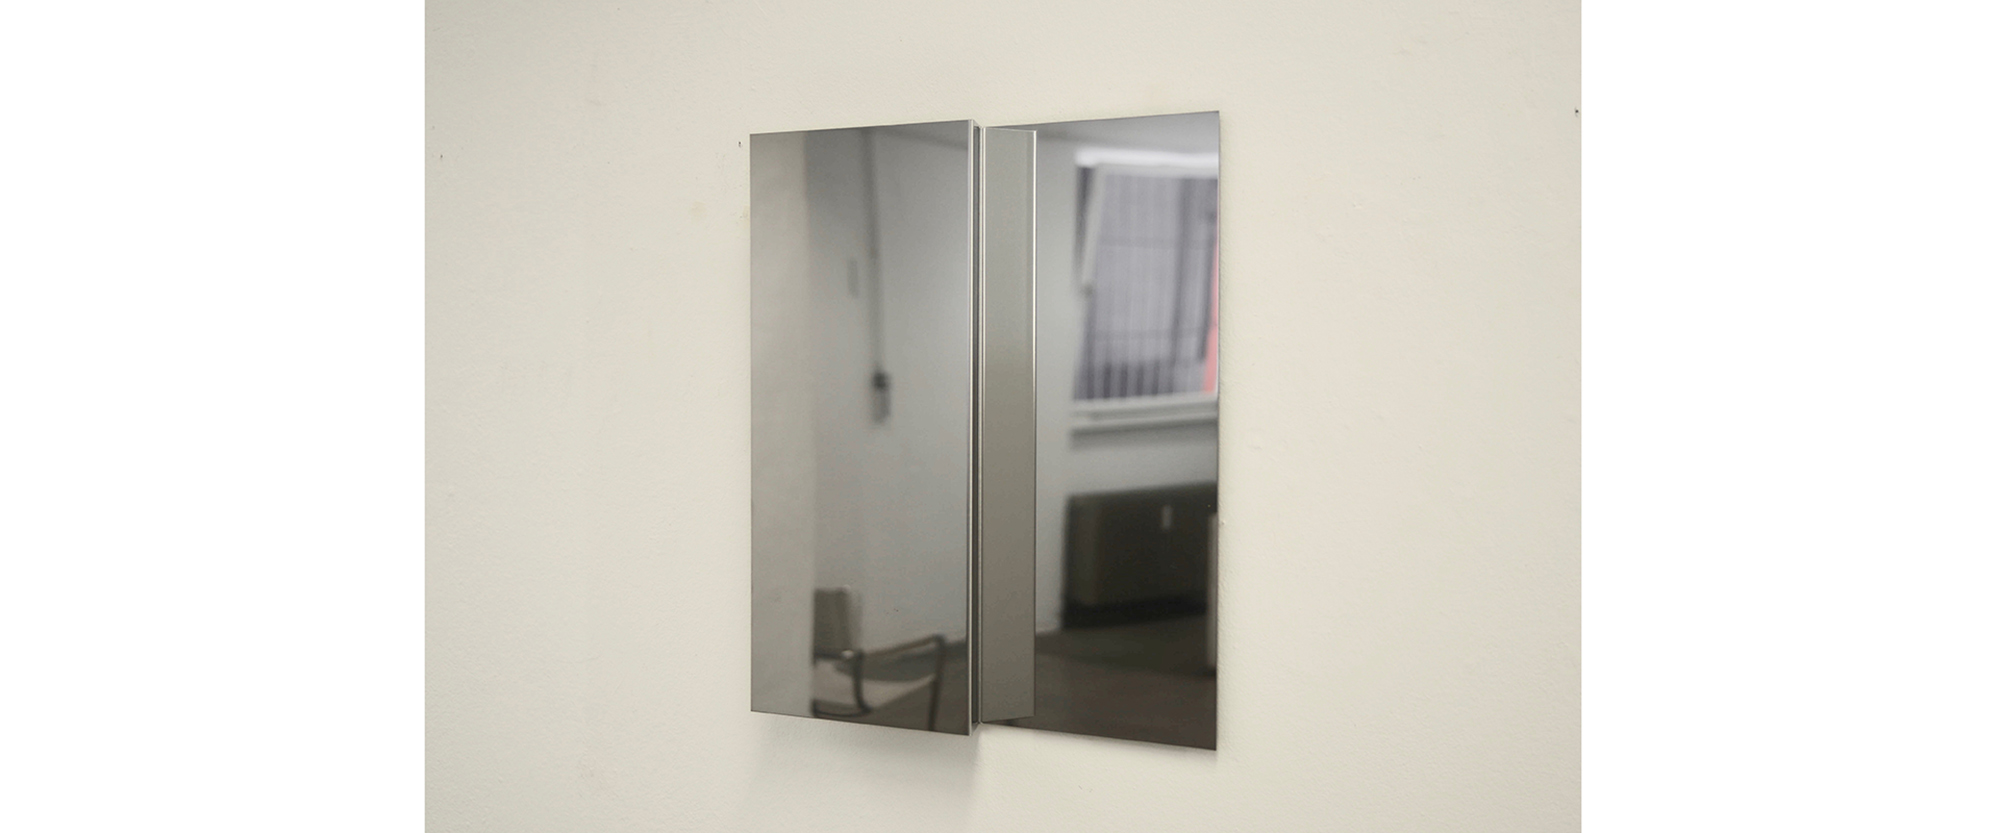 INSIDE- 2019, Chromstahl, 37 x 31 x 5 cm